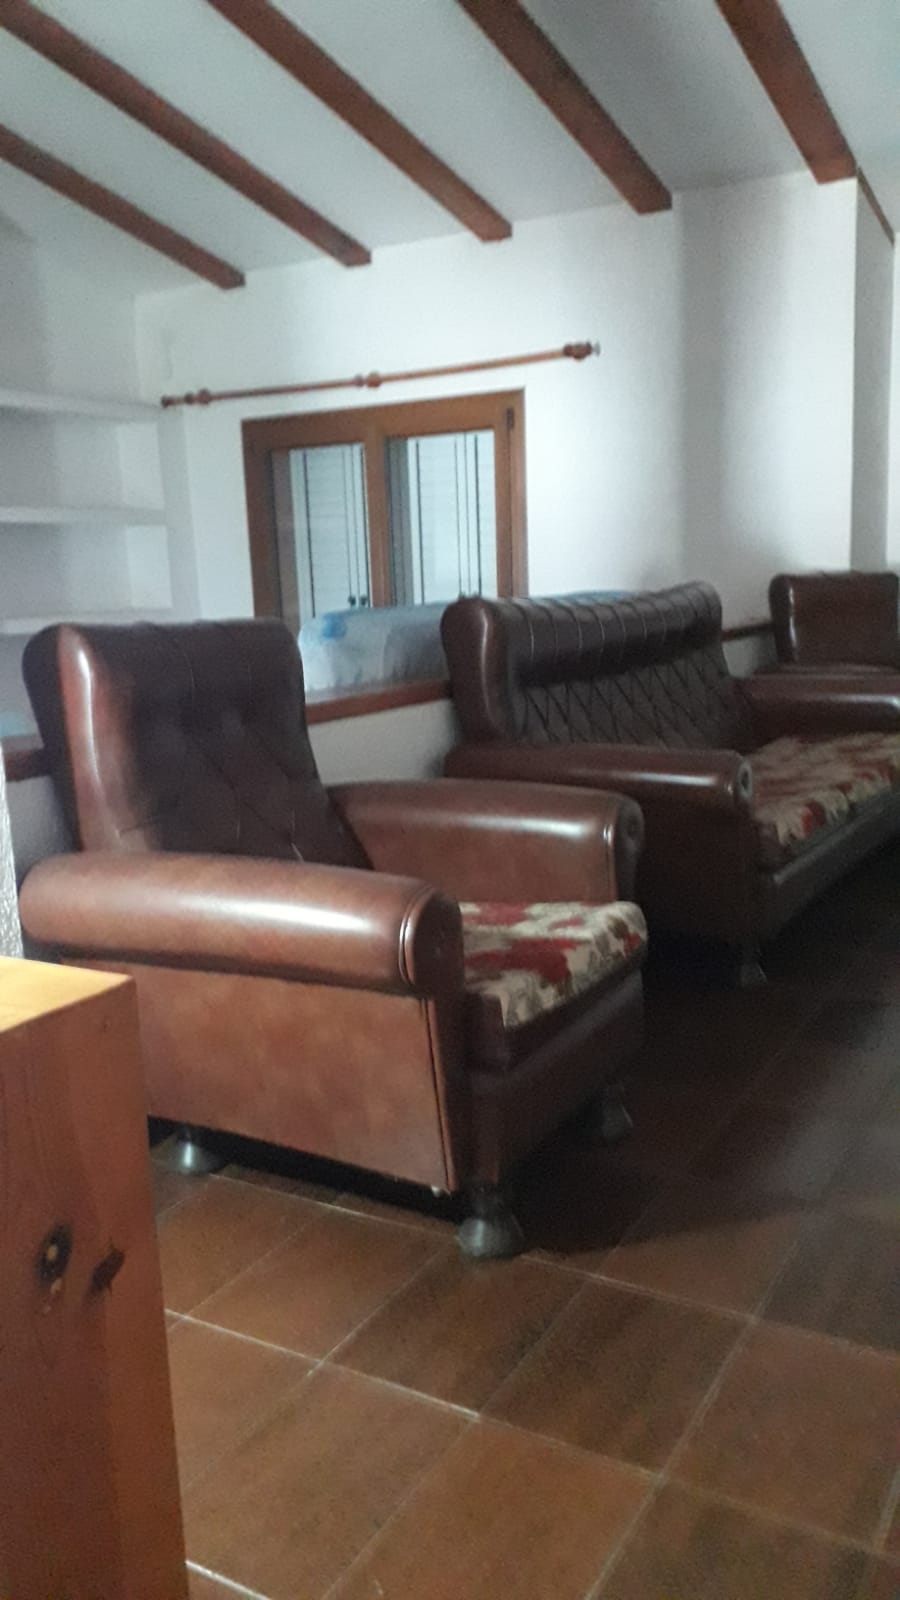 Servicio de vaciado de pisos y recogida de muebles en Renau - ¡Presupuestos sin compromiso!